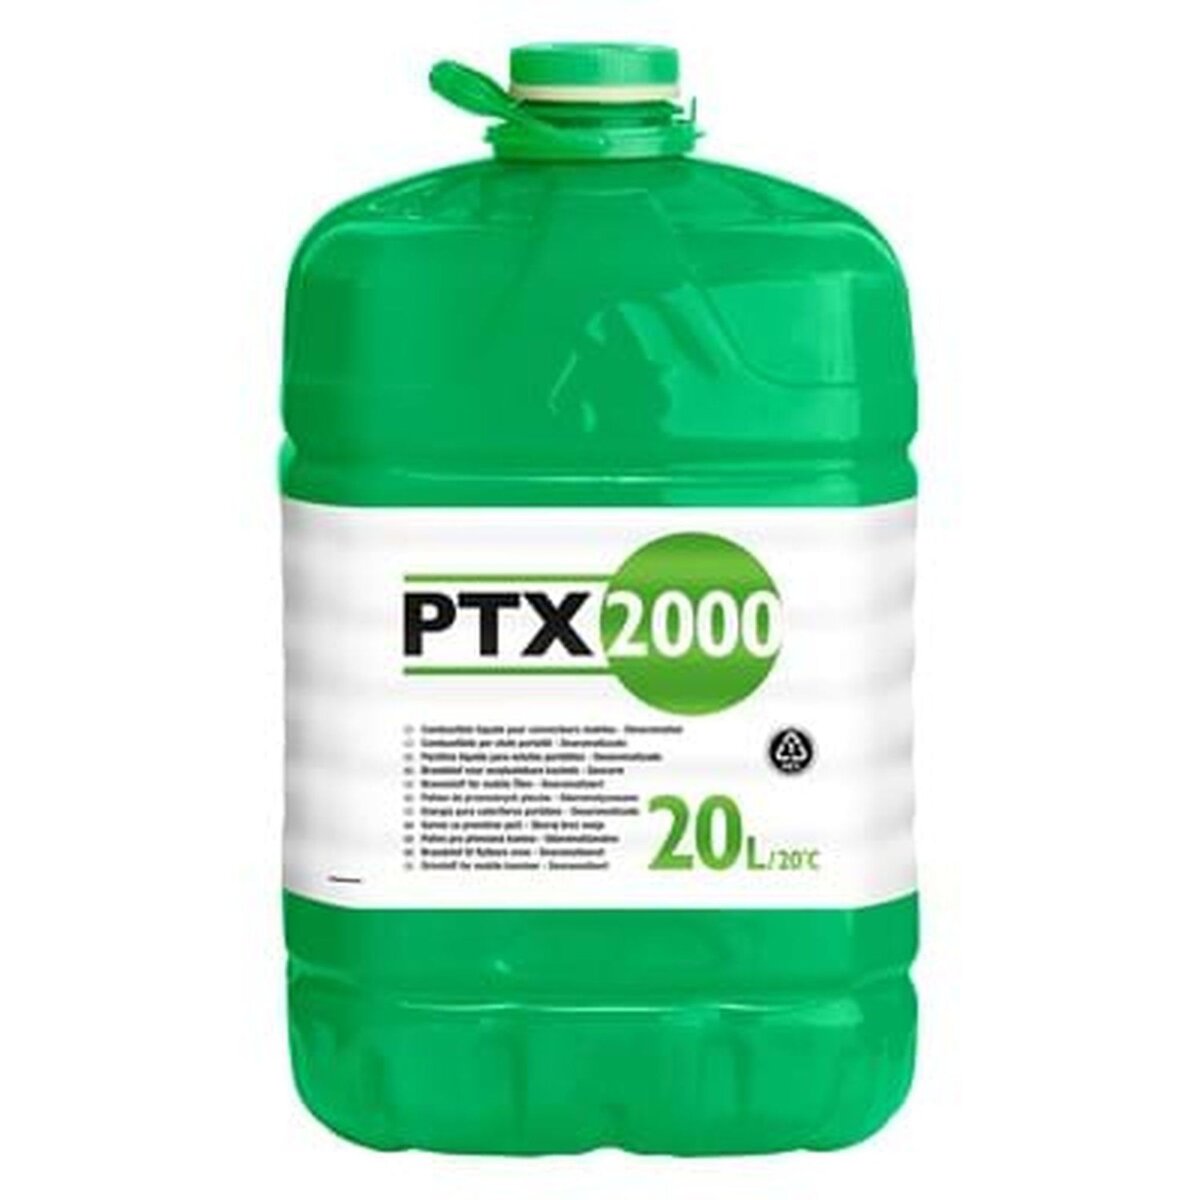 Pétrole liquide pour appareils mobiles de chauffage, PTX 2000, 20 L